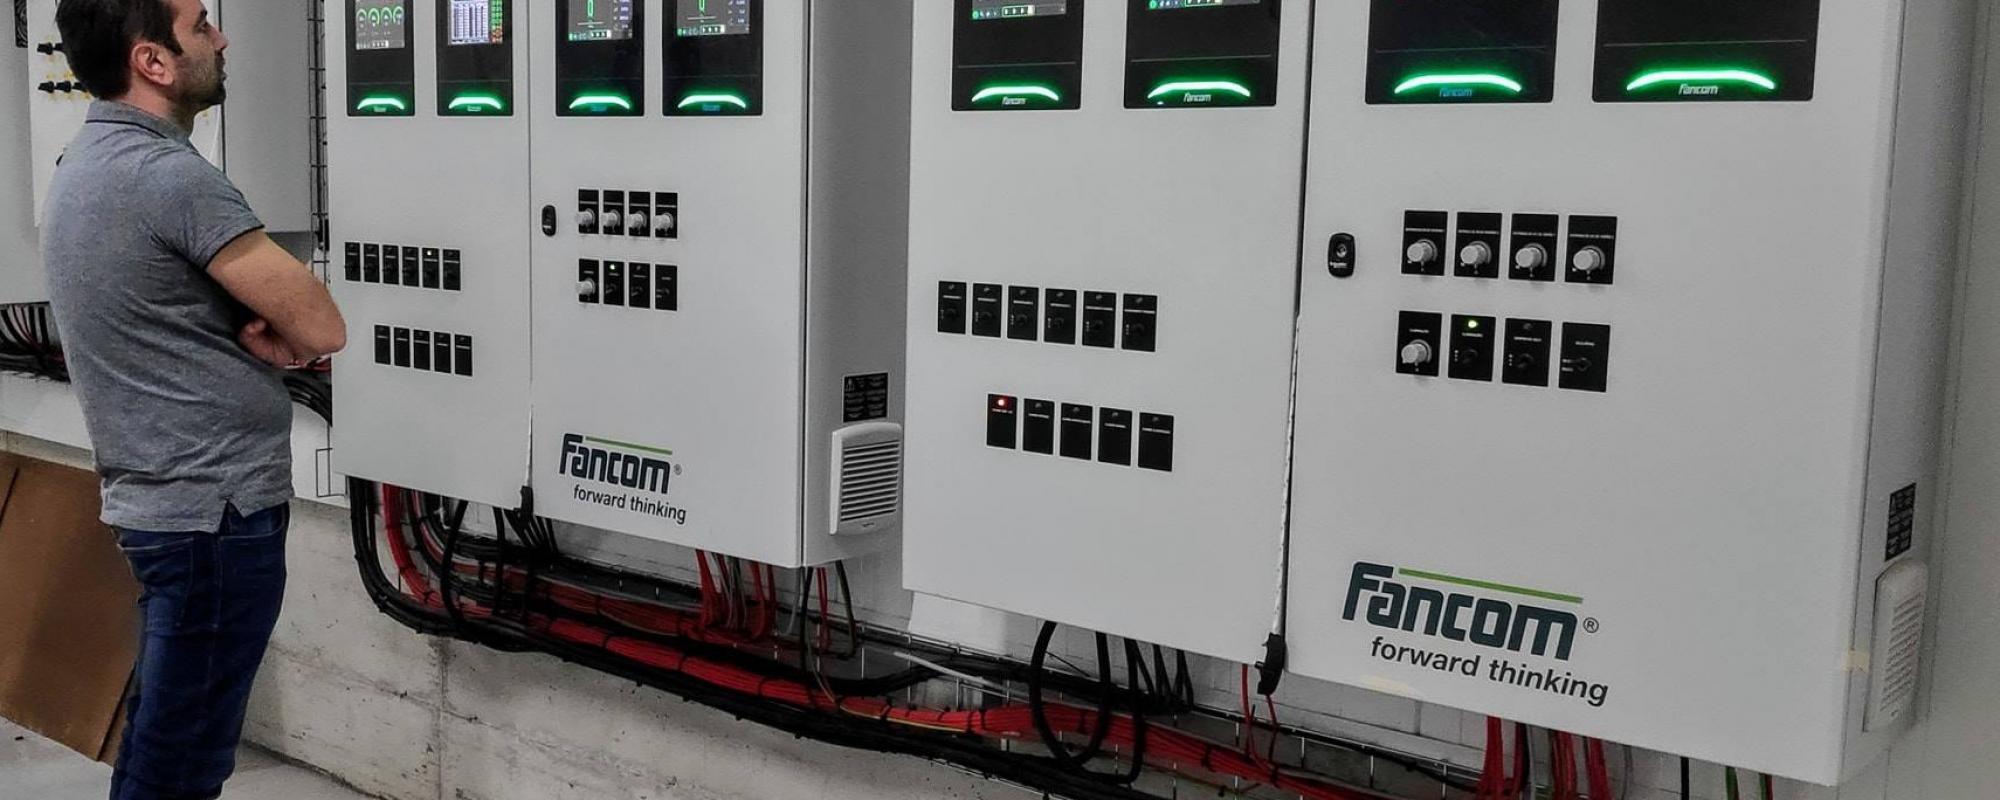 Fancom construye paneles de conexiones más rápidos y eficientes de acuerdo a las especificaciones del cliente